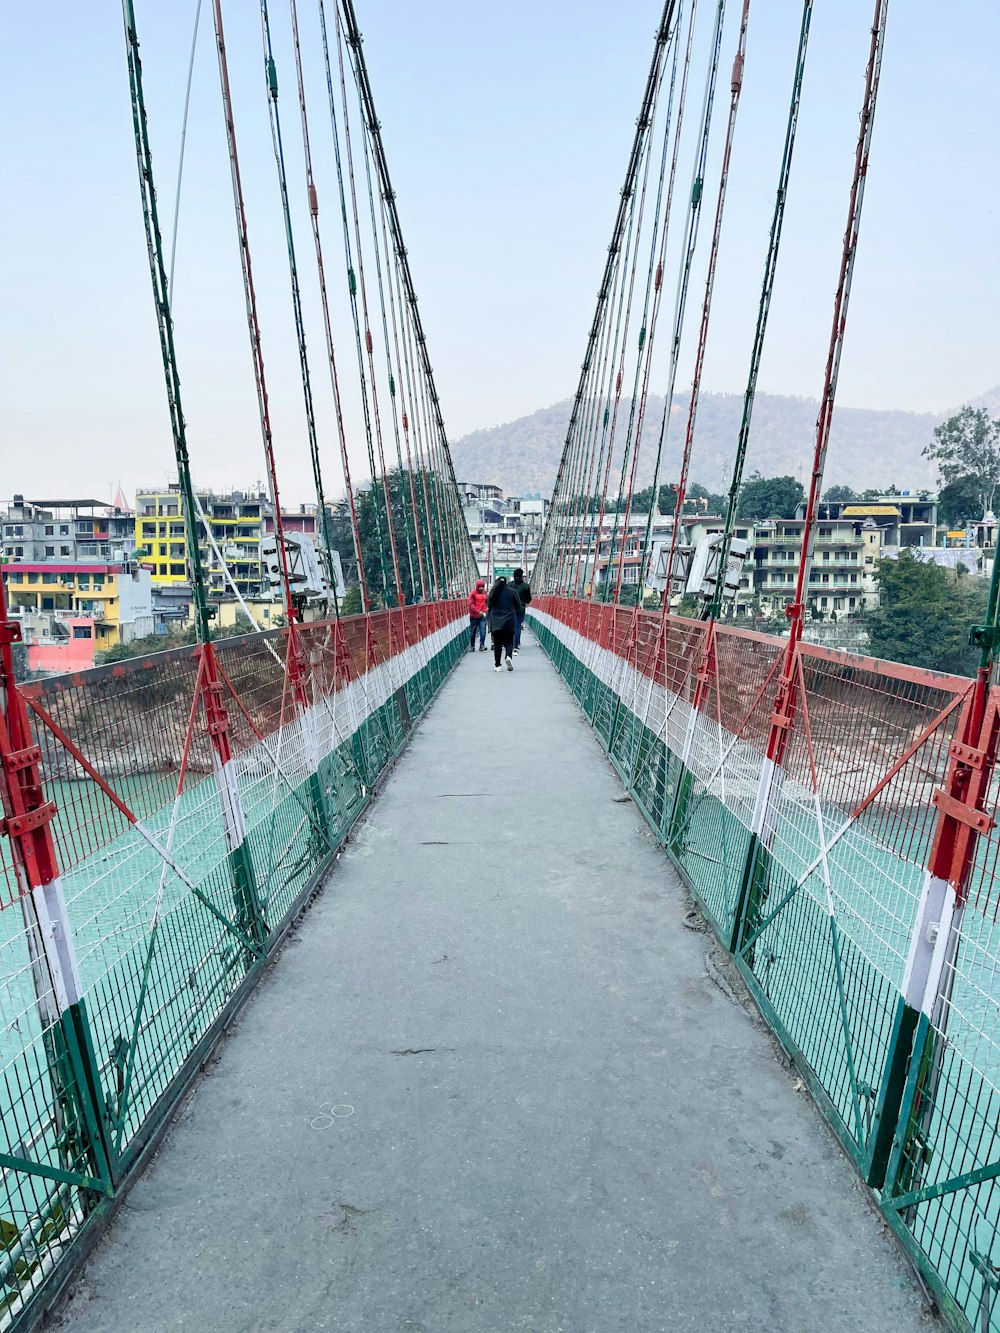 Persona con chaqueta negra caminando en el puente de metal rojo durante el día